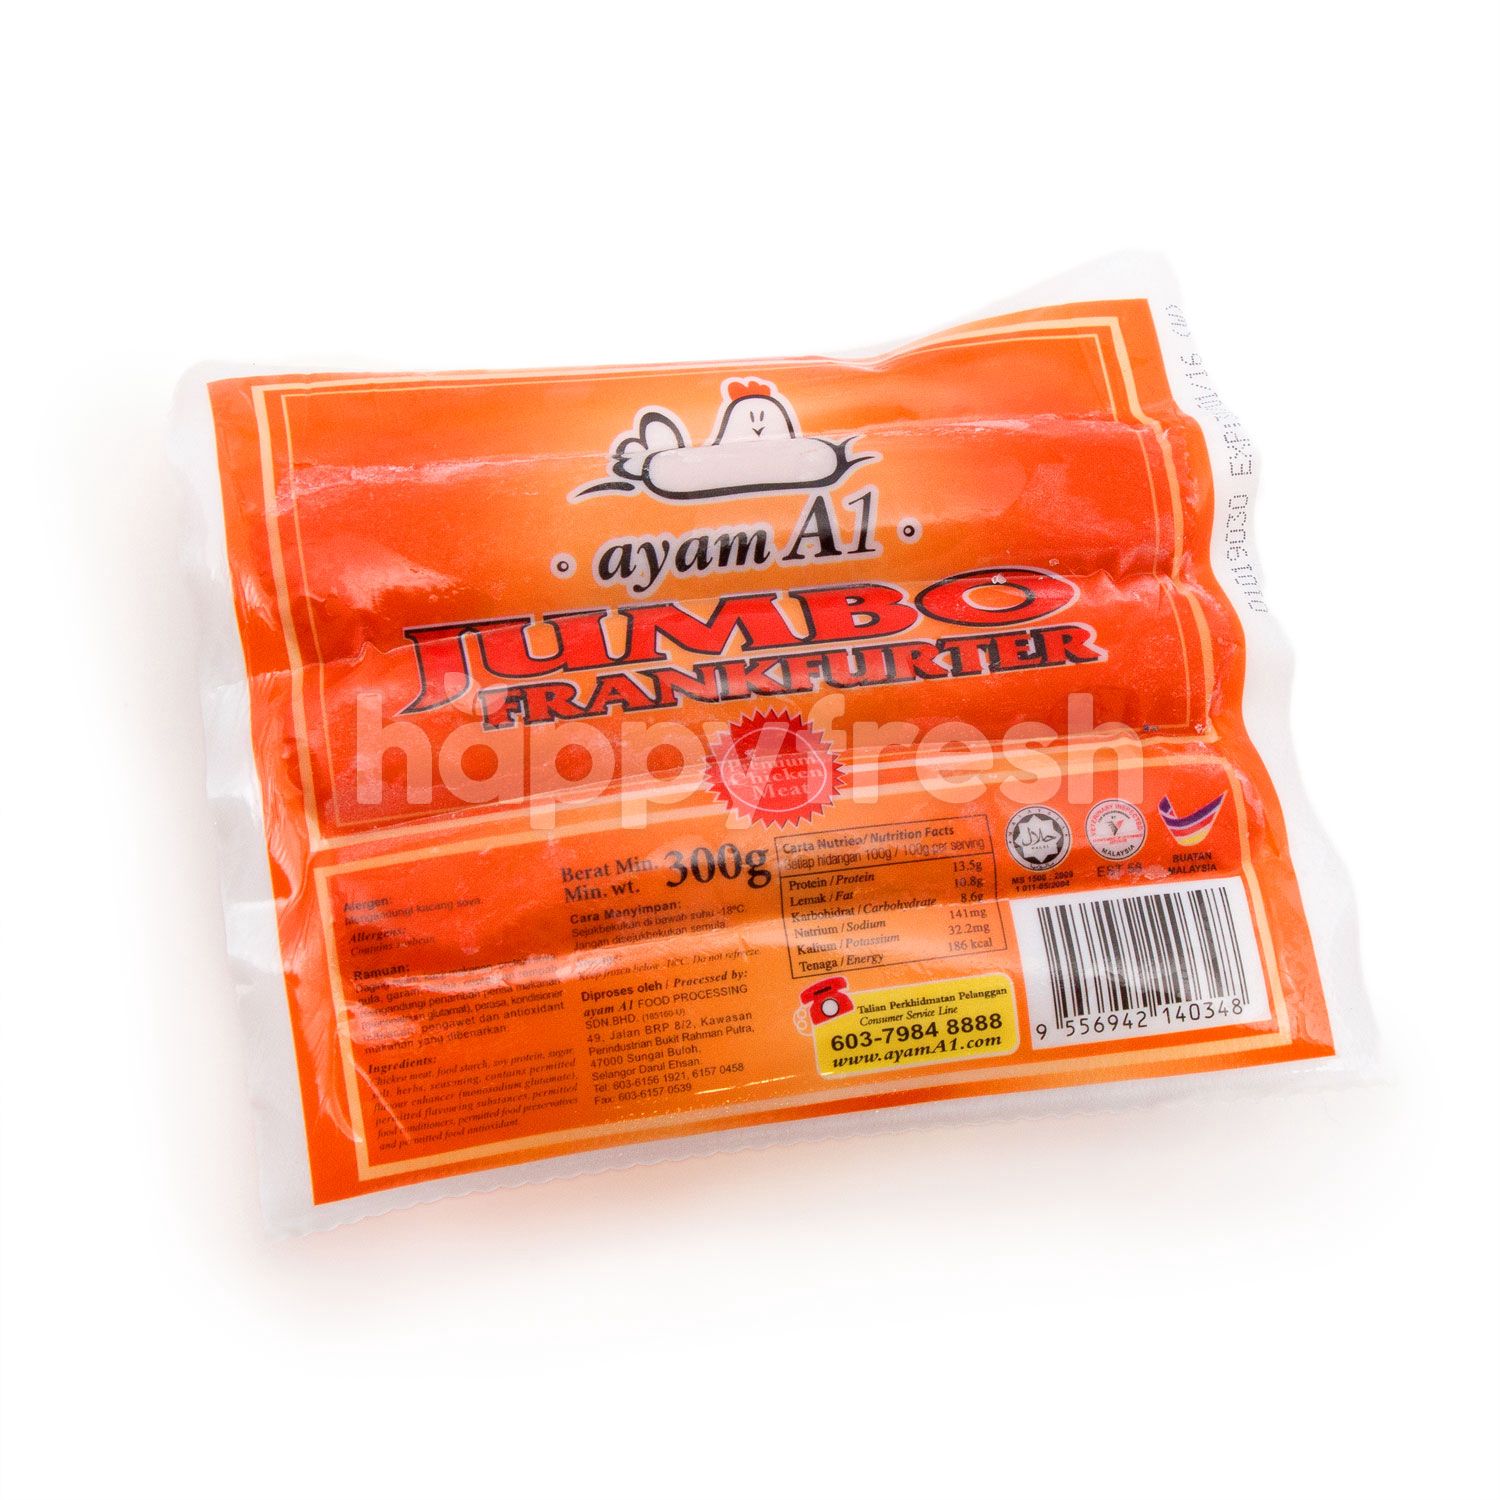 Buy Ayam A1 Jumbo Frankfurter At Aeon Happyfresh